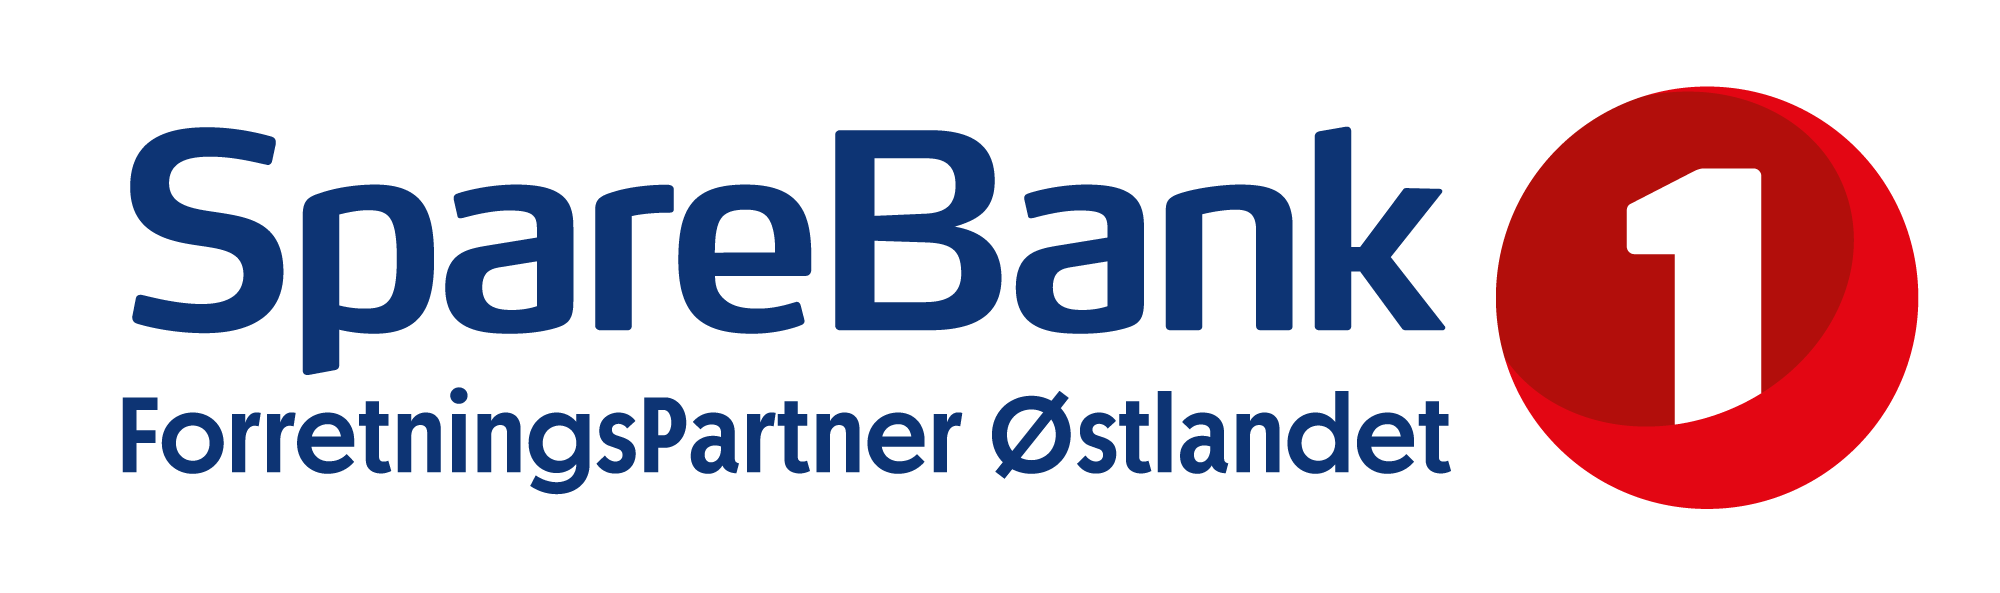 Vi ønsker velkommen til SpareBank 1 ForretningsPartner. Dette blir stas.